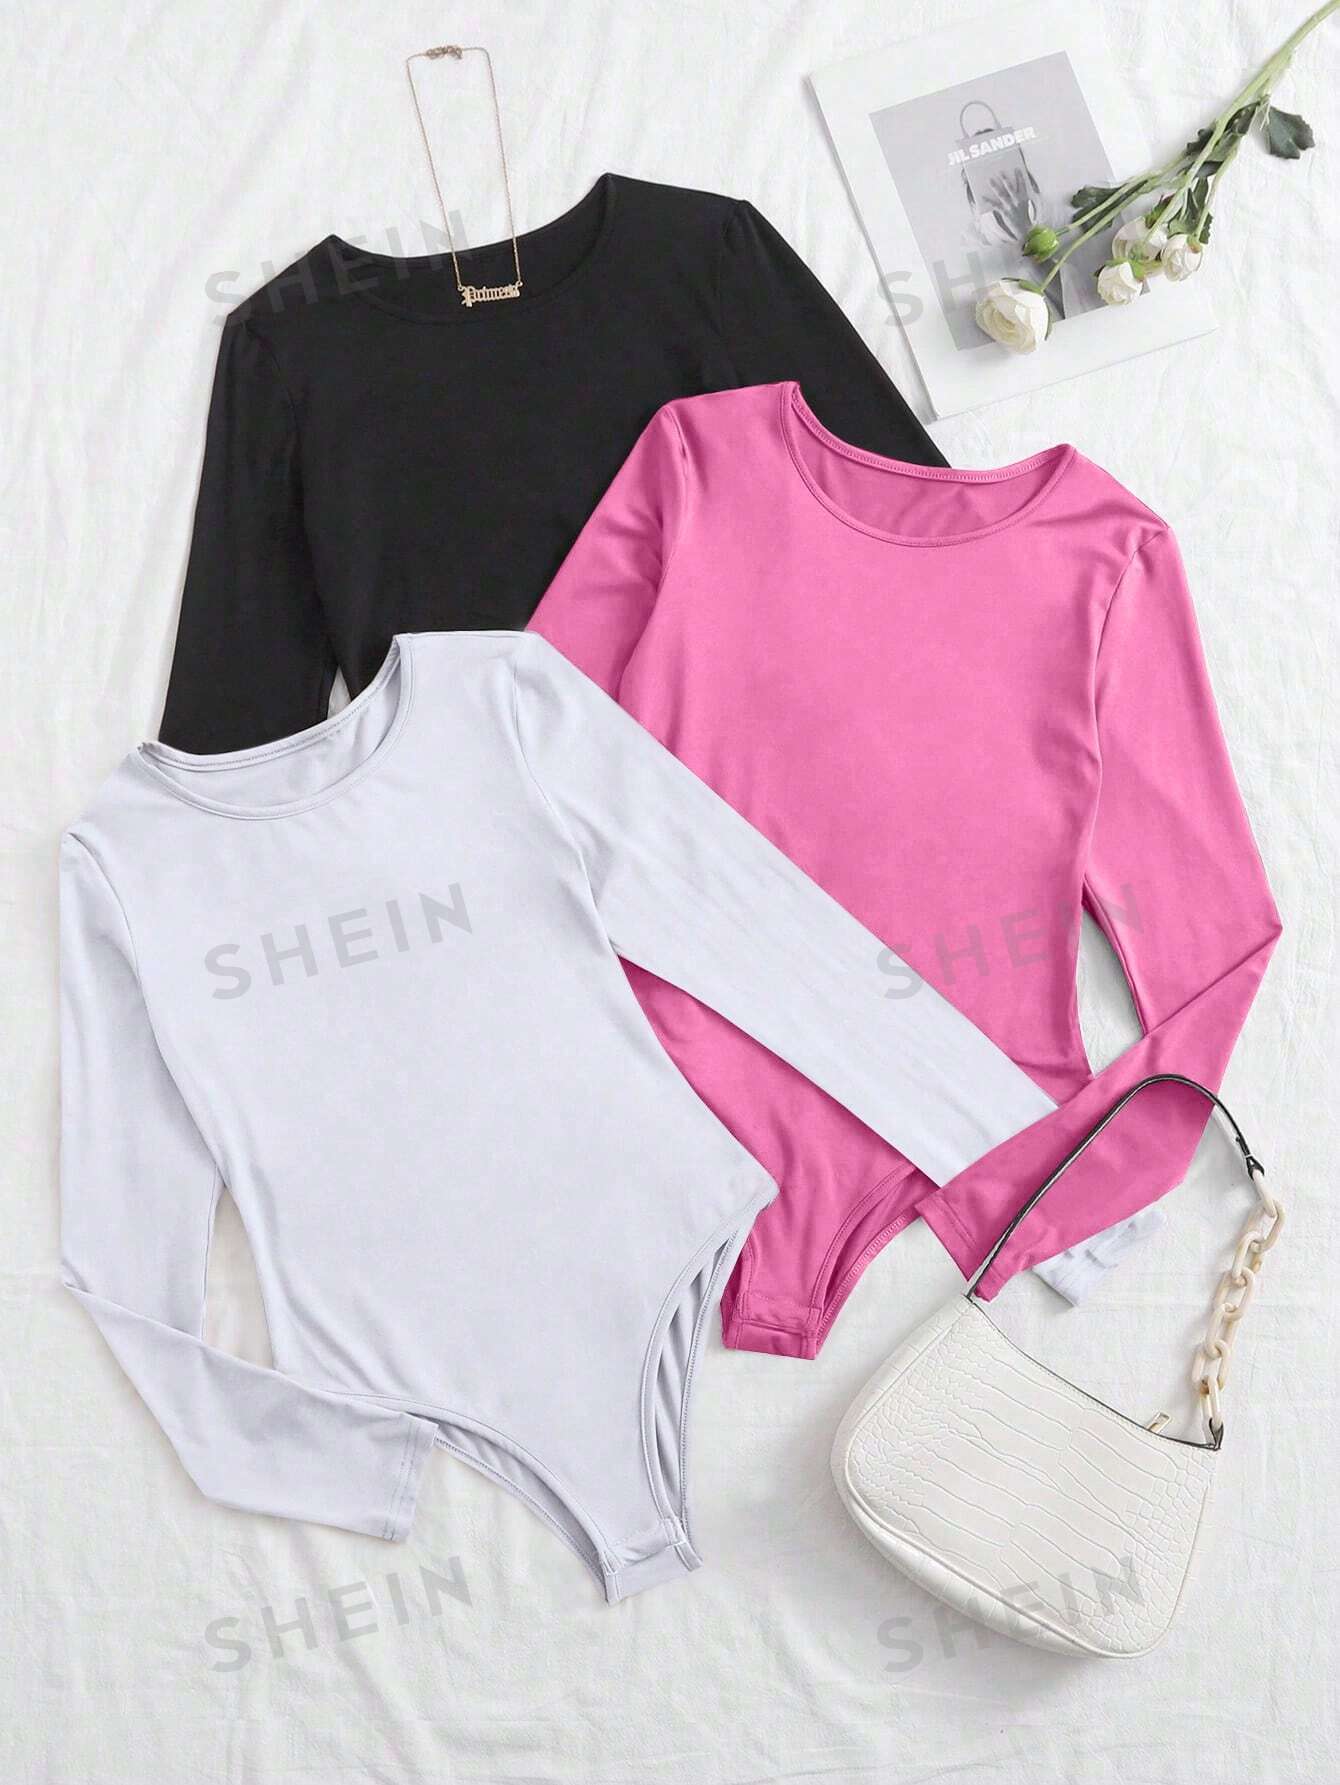 SHEIN Essnce Трехцветное облегающее боди-футболка с длинными рукавами, многоцветный shein essnce трехцветное облегающее боди футболка с длинными рукавами многоцветный